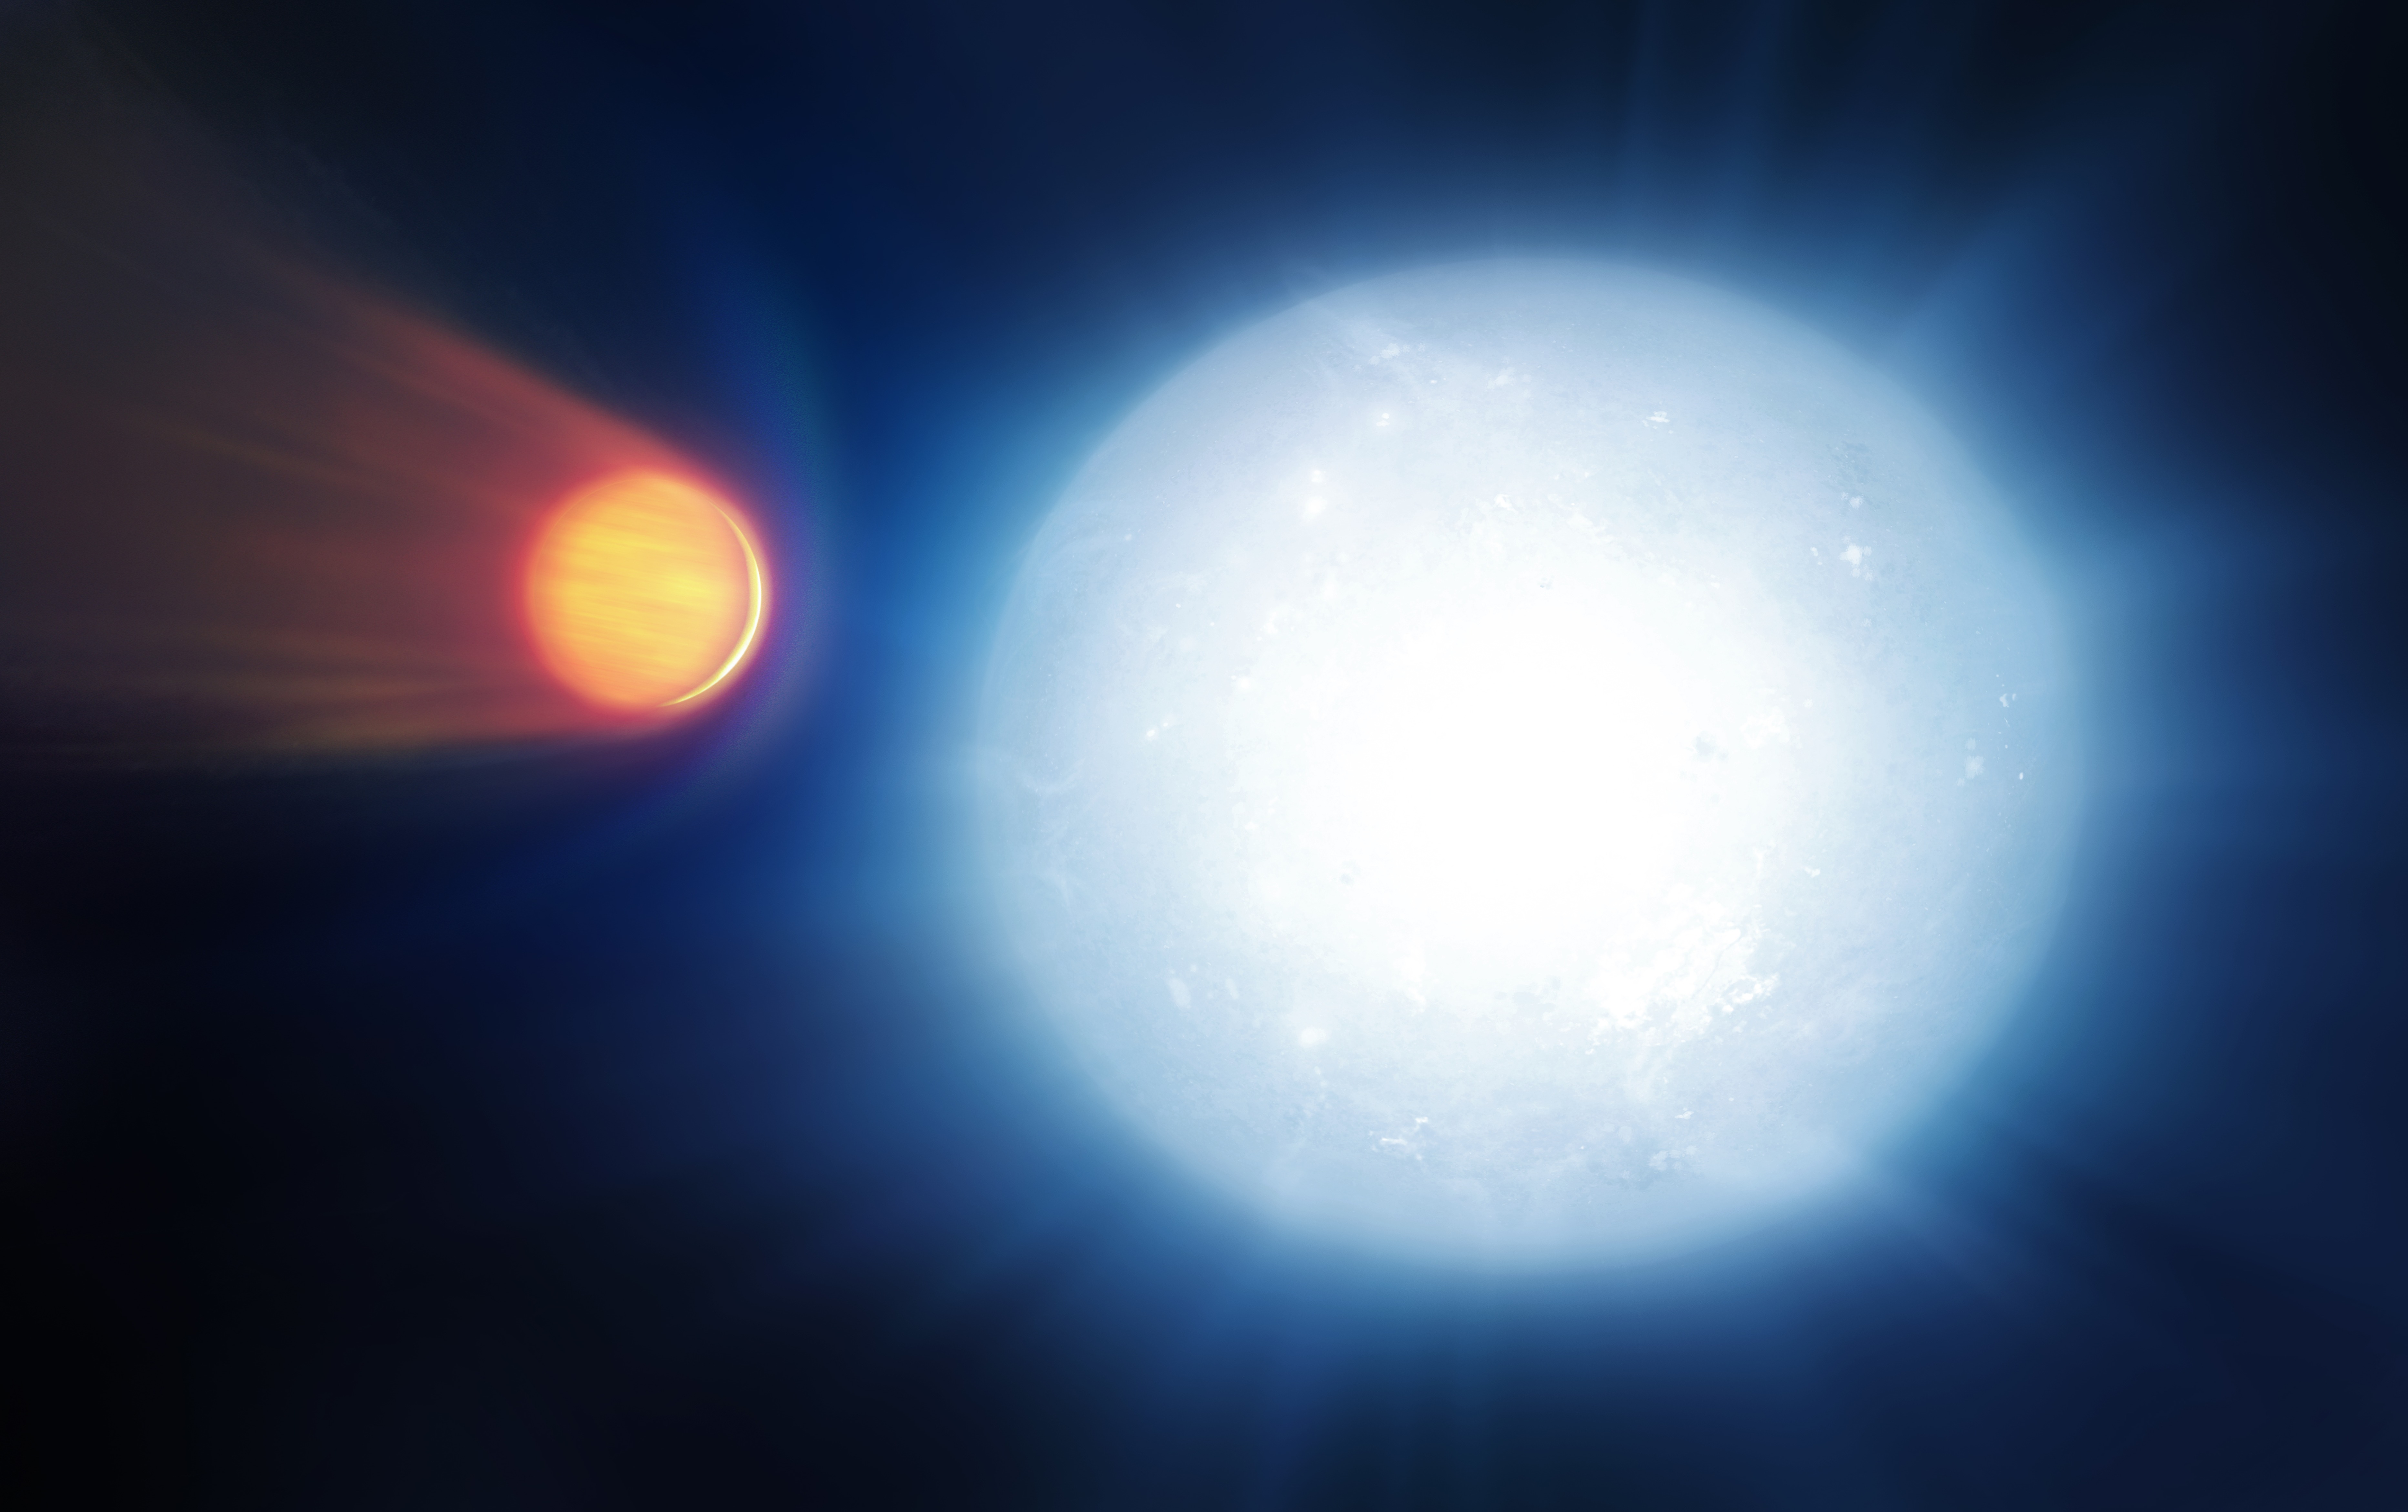 Kutatók olyan elemekre bukkantak egy 650 fényévre lévő exobolygón, amilyenre még soha